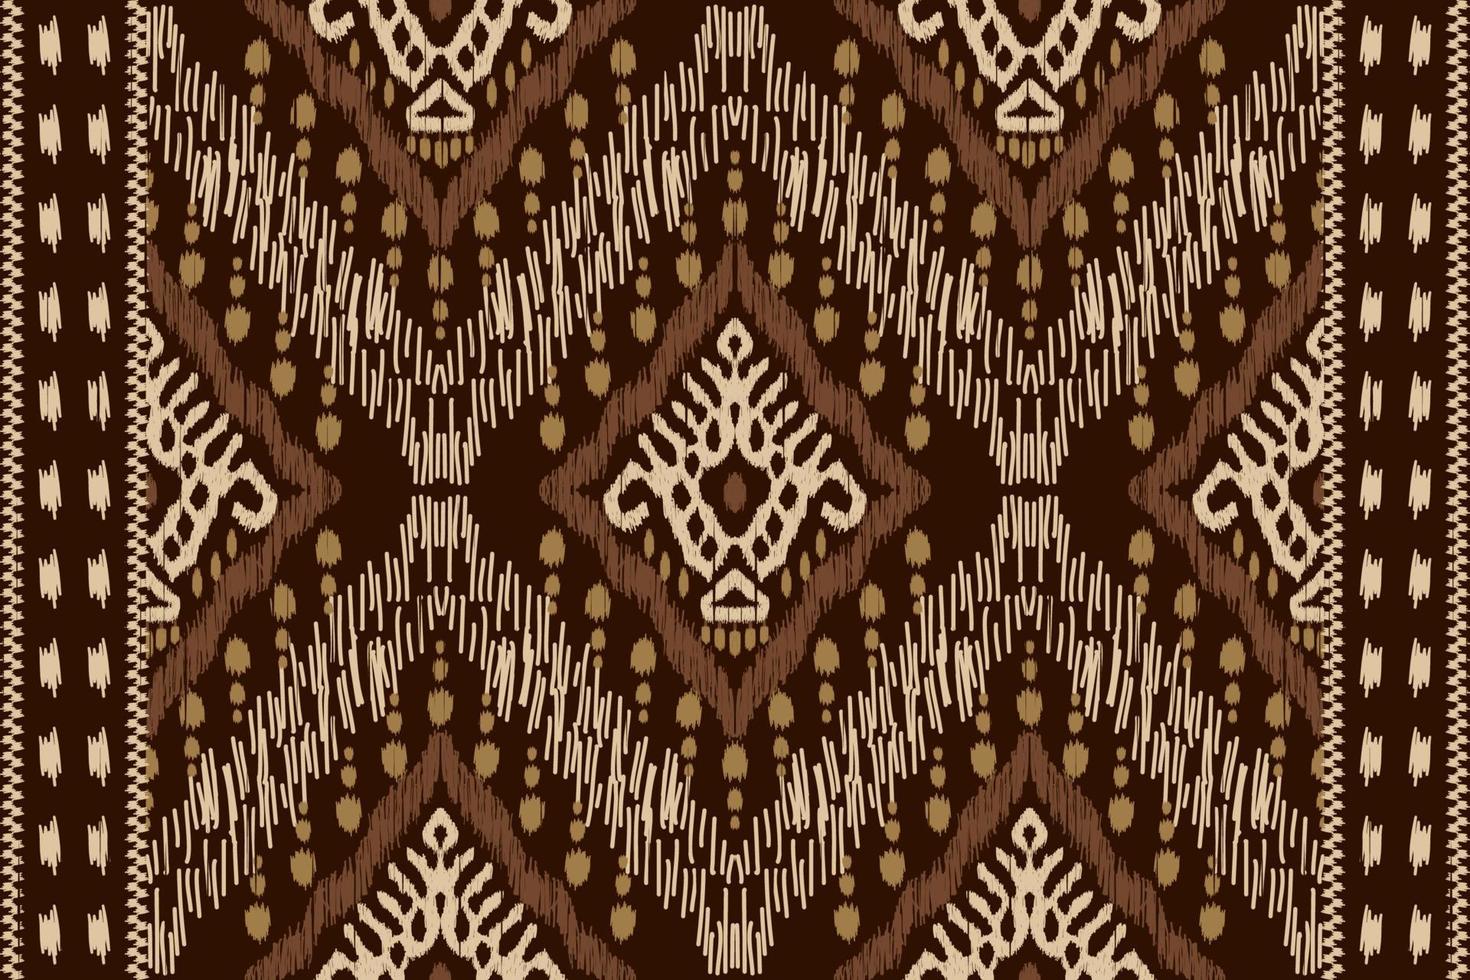 ikat floral paisley bordado em brown background.geometric étnica oriental sem costura padrão tradicional.asteca estilo abstrato vector illustration.design para textura, tecido, roupas, embrulho, sarongue.